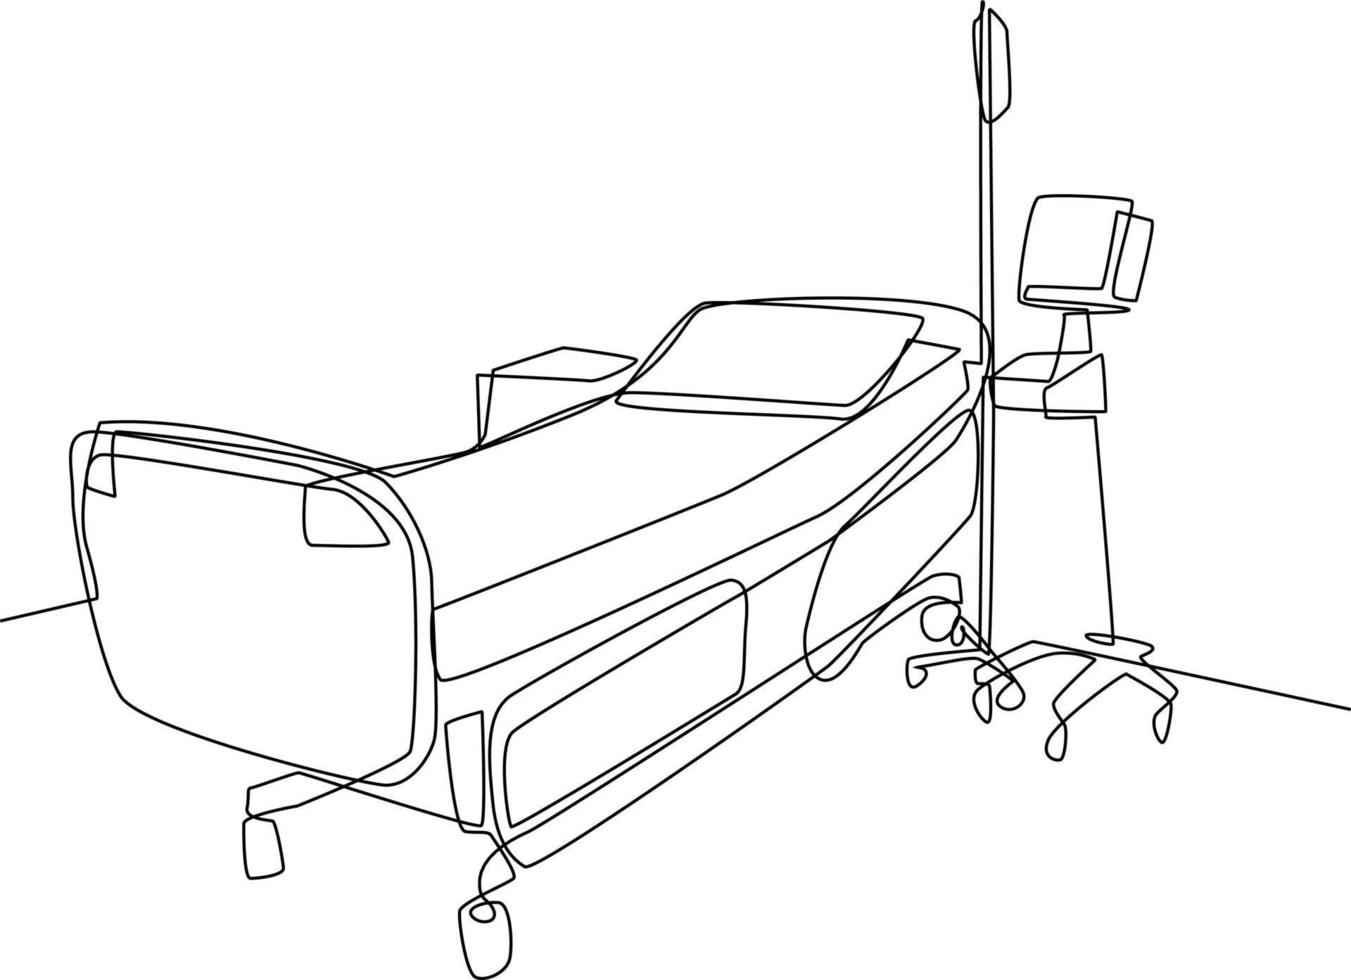 Single einer Linie Zeichnung Krankenhaus Zimmer Innere mit Bett und Klinik Ausrüstung. ein leeren Krankenhaus Zimmer Konzept. kontinuierlich Linie zeichnen Design Grafik Vektor Illustration.